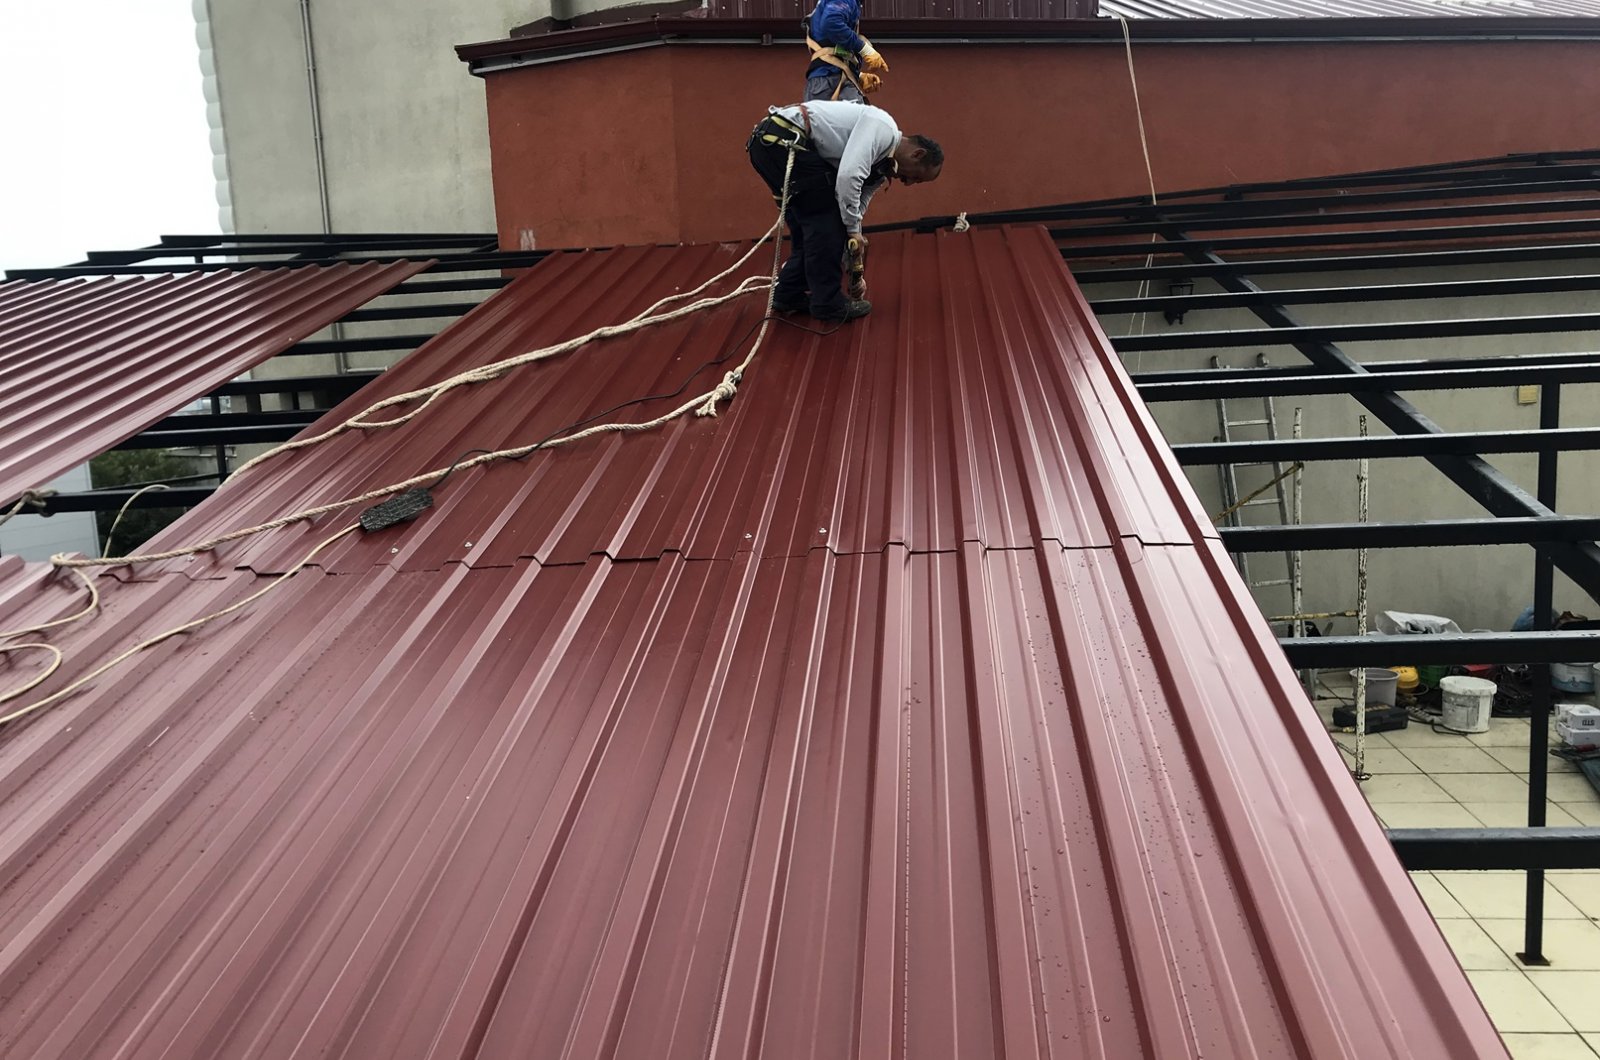 Trapez Saç çatı Kaplaması yapımı alt straforu ile ısı yalıtım işleri firmamız tarafından yapılmaktadır.